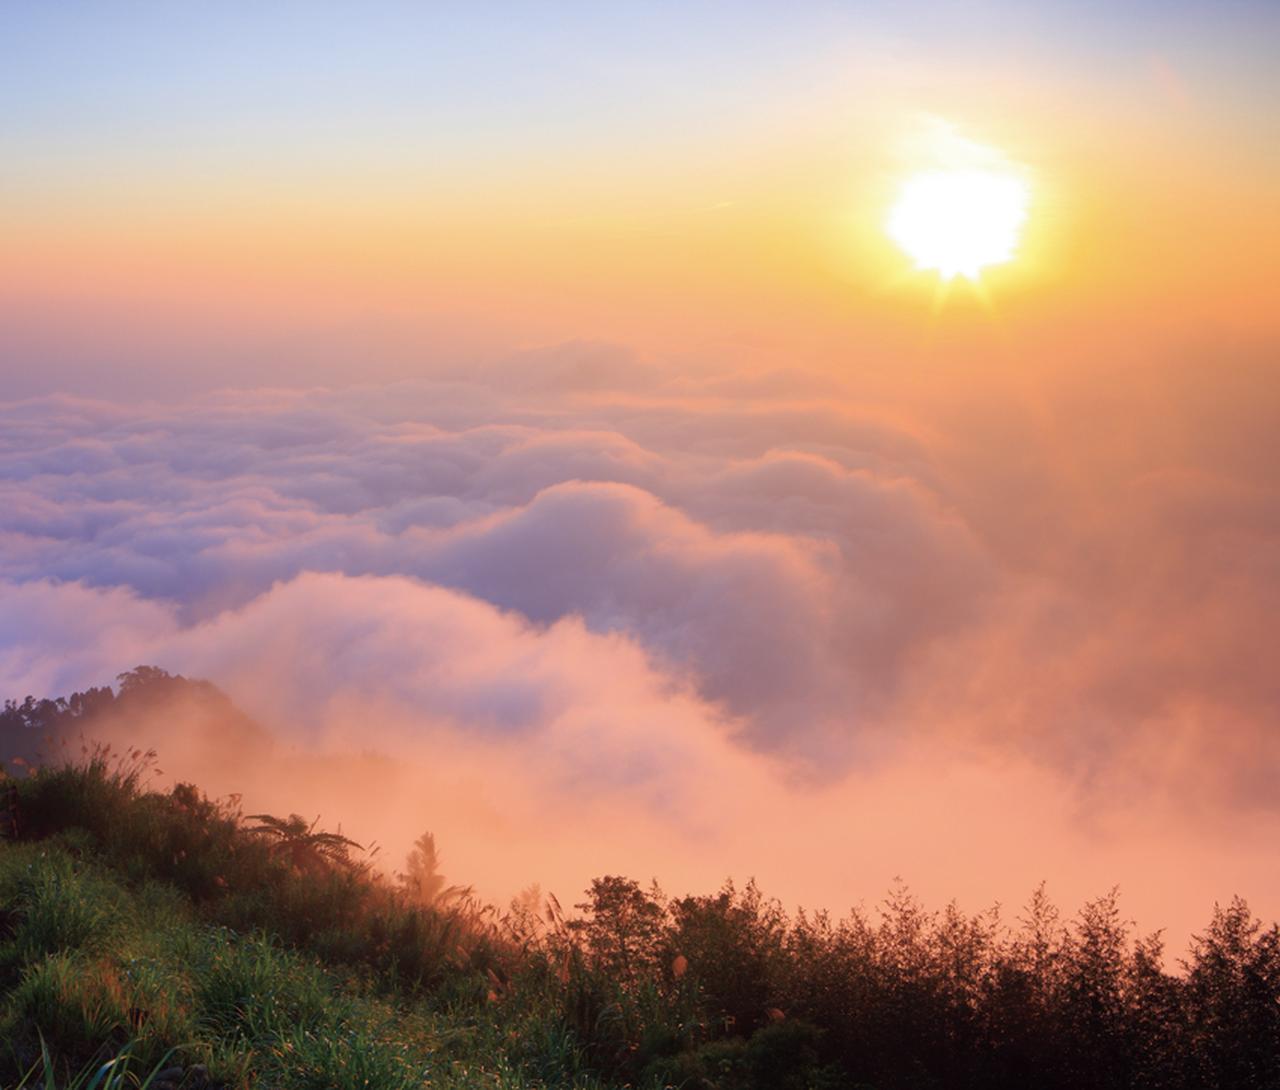 すべてを浄化してくれそうな美しい雲海を見に行こう。南台湾・阿里山